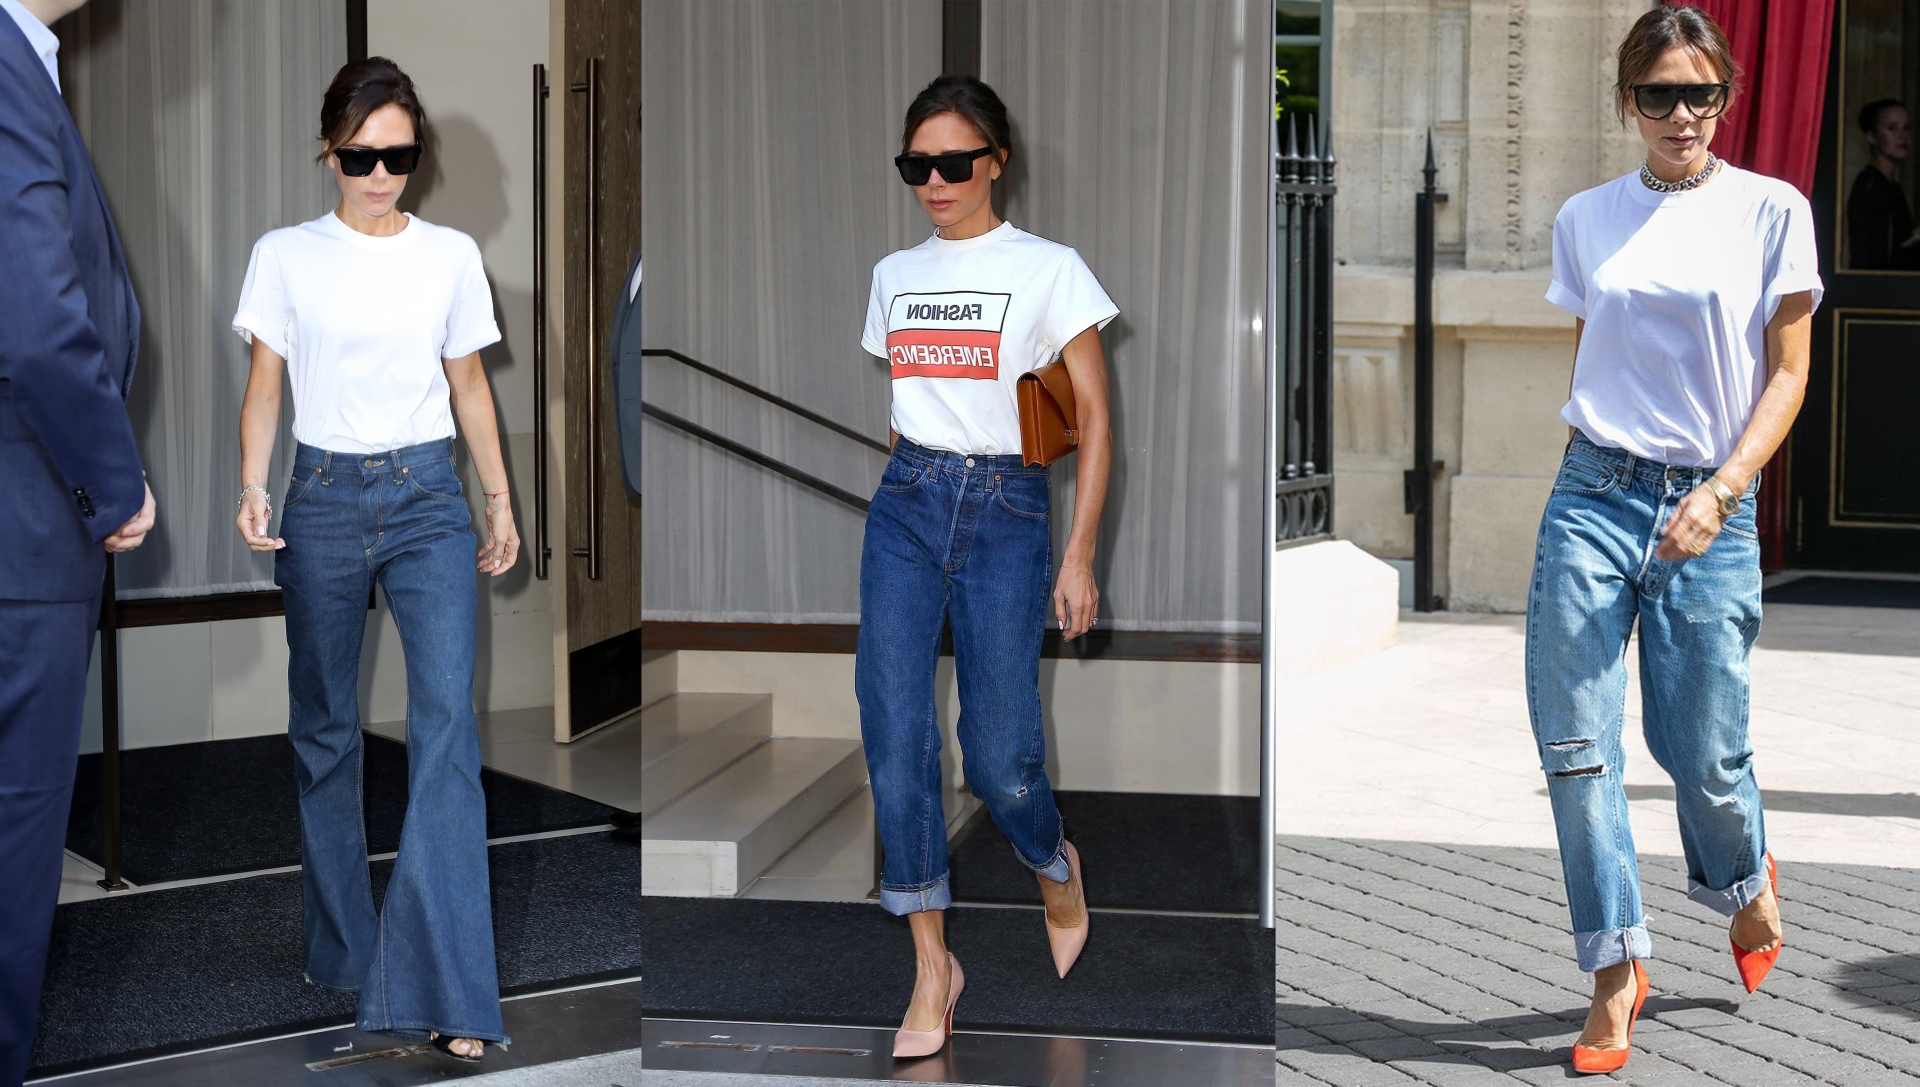 Một trong những item yêu thích của Victoria Beckham khi mặc quần jeans là áo thun trắng. Combo thường thấy của cô nàng là áo thun, quần jeans đủ kiểu và giày cao gót mũi nhọn.